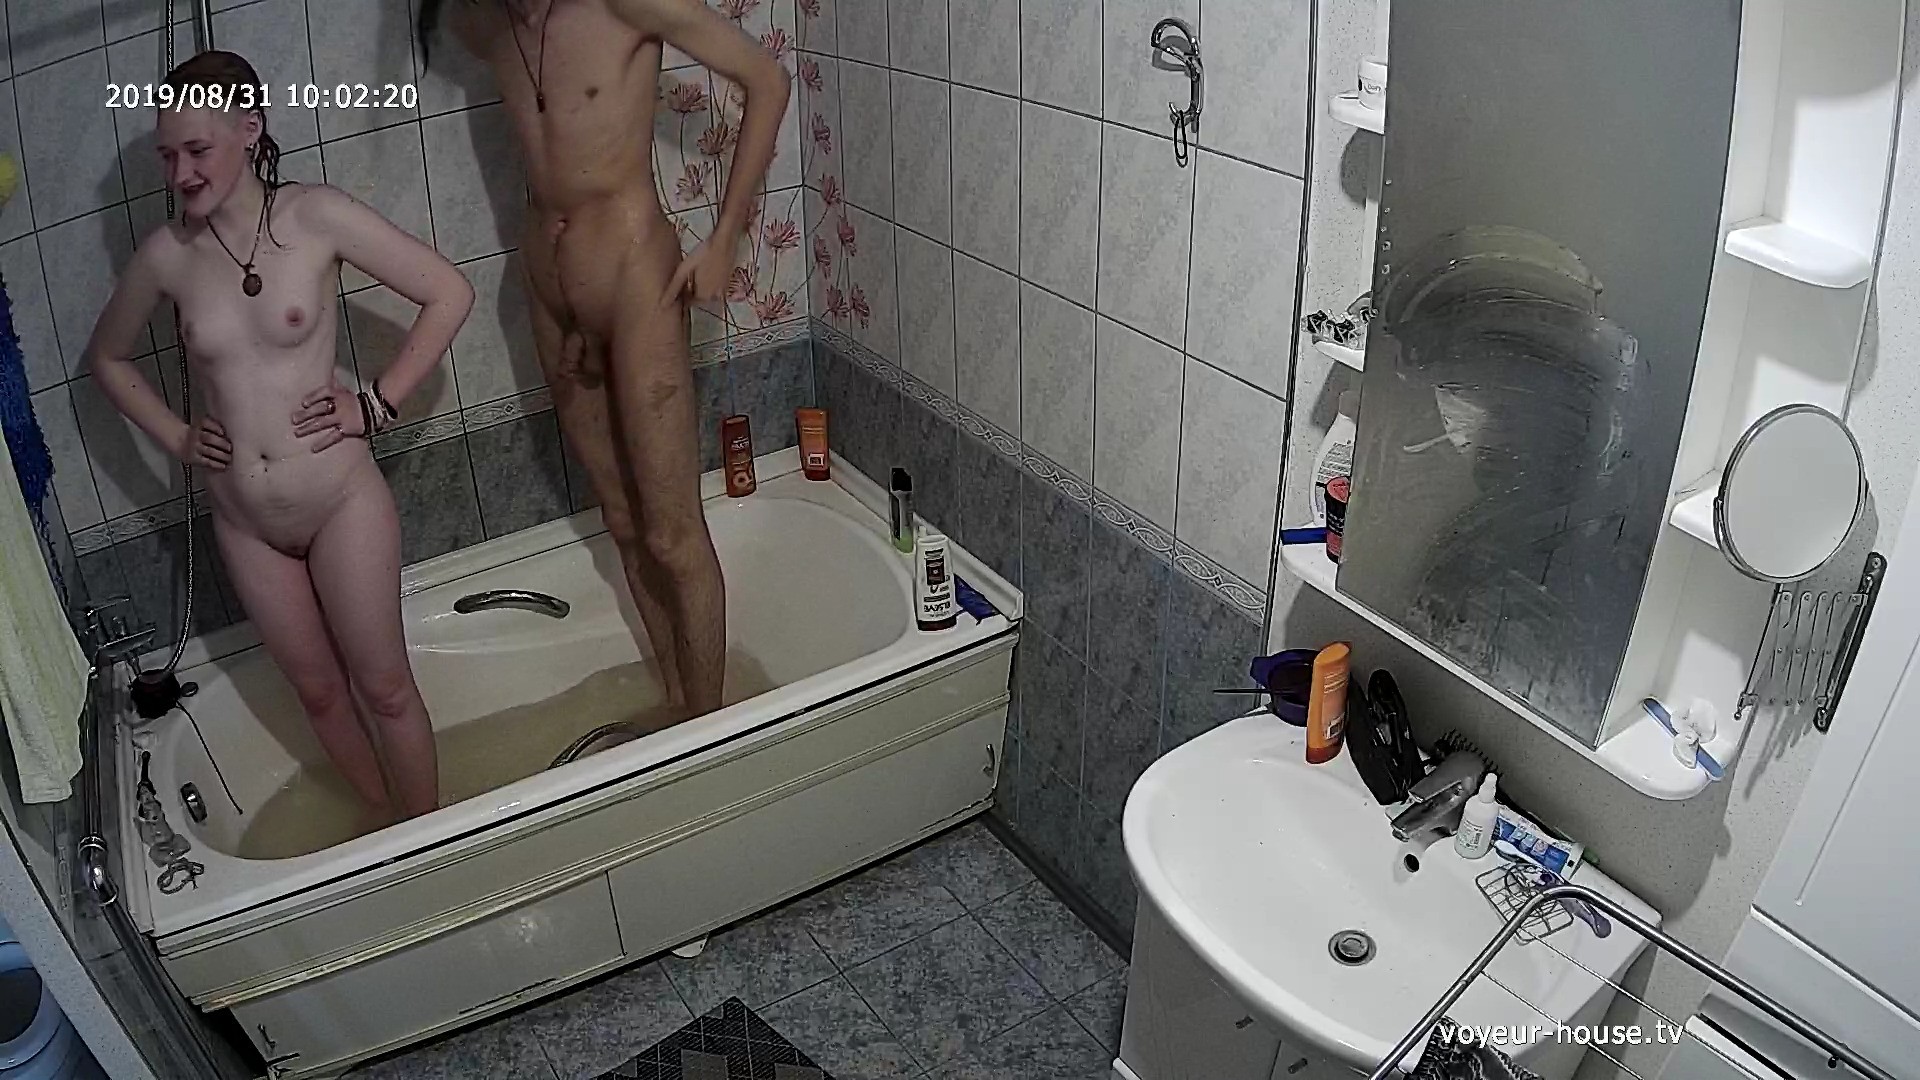 Nudist Bathroom Voyeur - Watch Naked people Guest Couple Bath Fun 31 Aug 2019 | Naked people with  Tonk in Bedroom | The biggest Voyeur Videos gallery